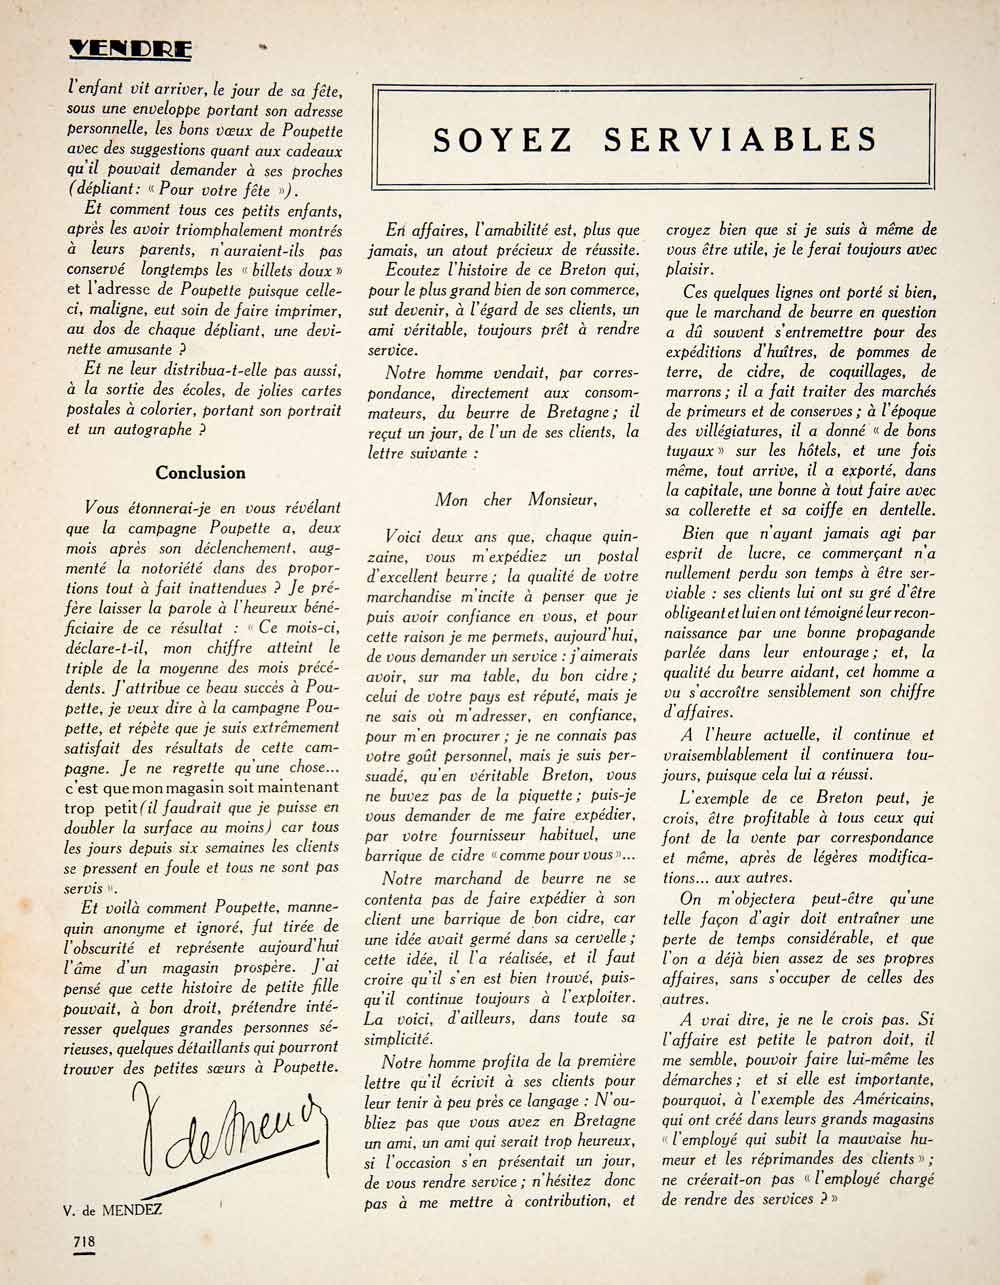 1924 Article Histoire Poupette Mannequin Victor Mendez Paris-Baby French VENA2